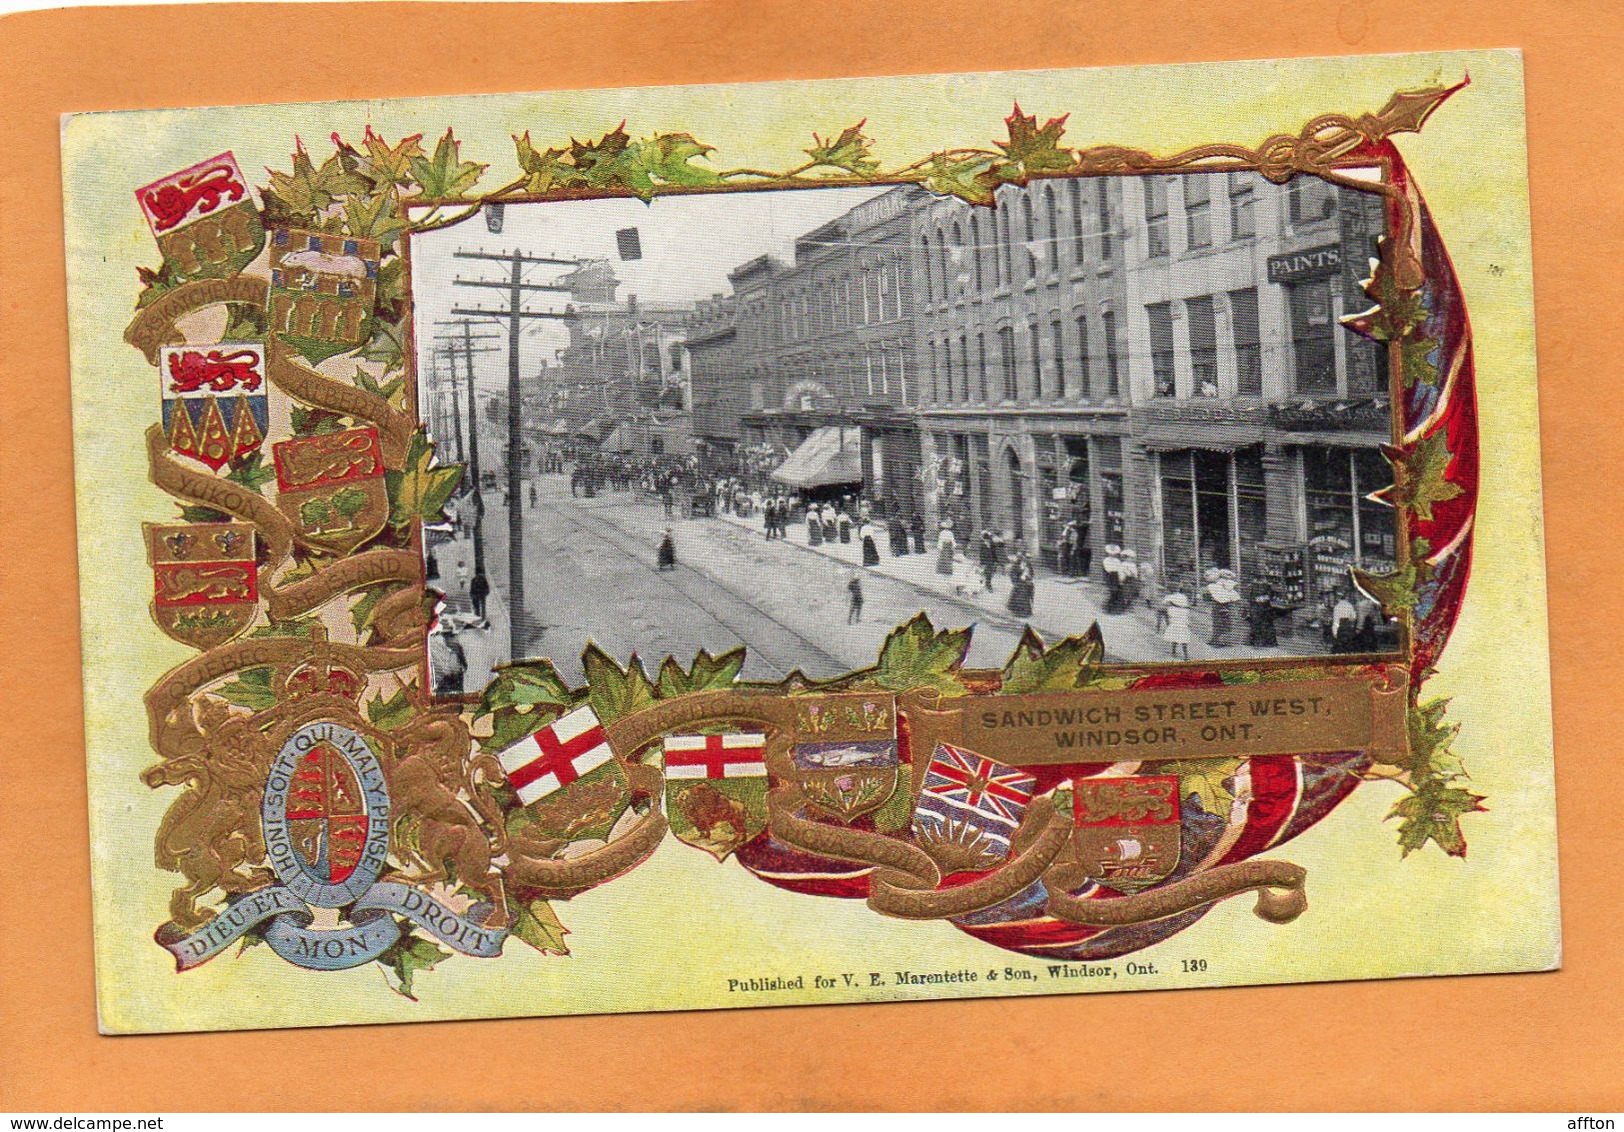 Windsor Ont 1905 Postcard - Windsor